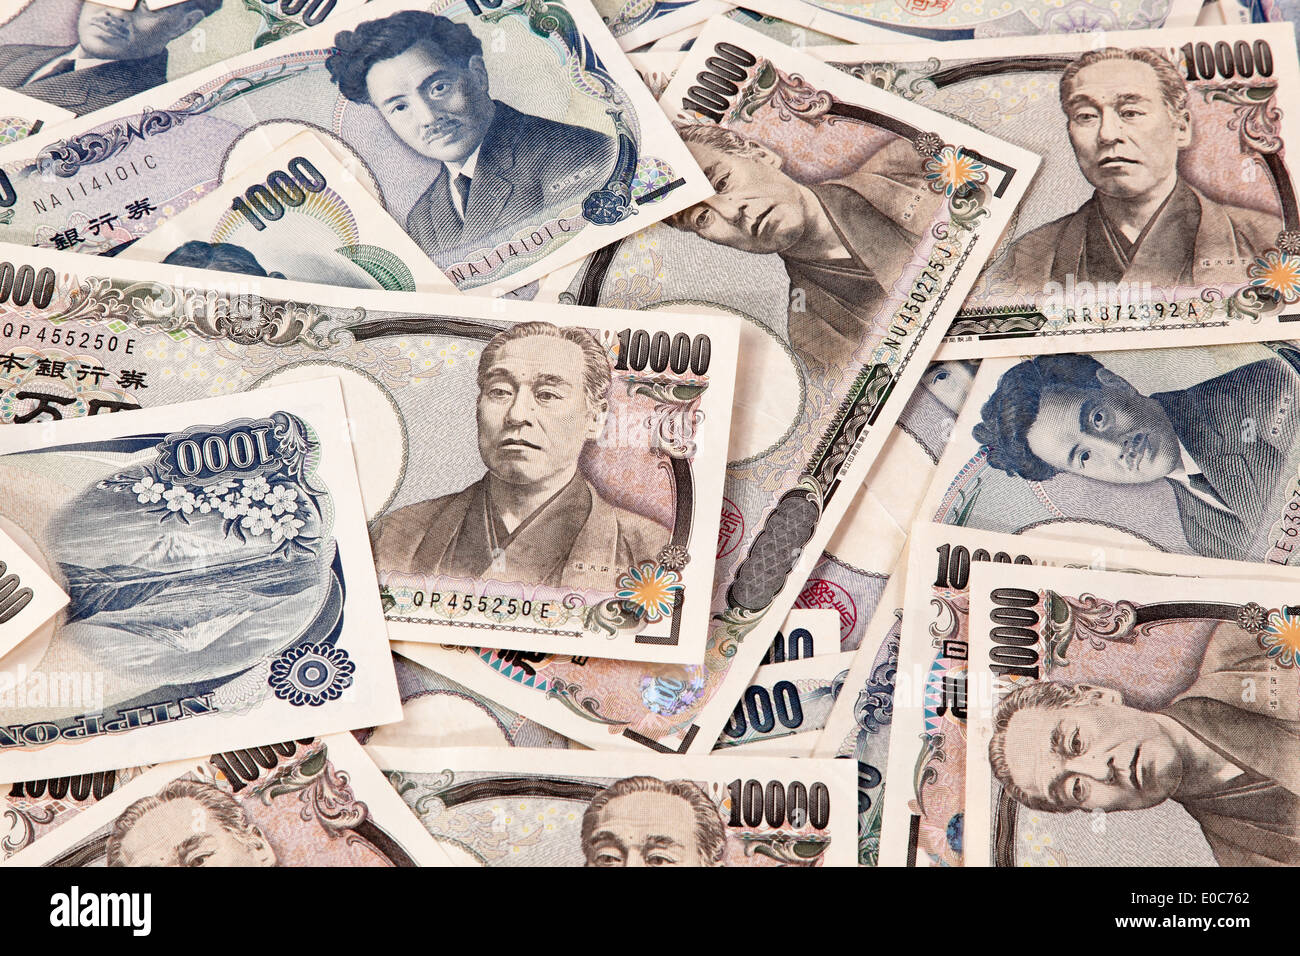 A lot of Japanese money notes the yen currency, Viele japanische Geld Scheine der Yen Waehrung Stock Photo